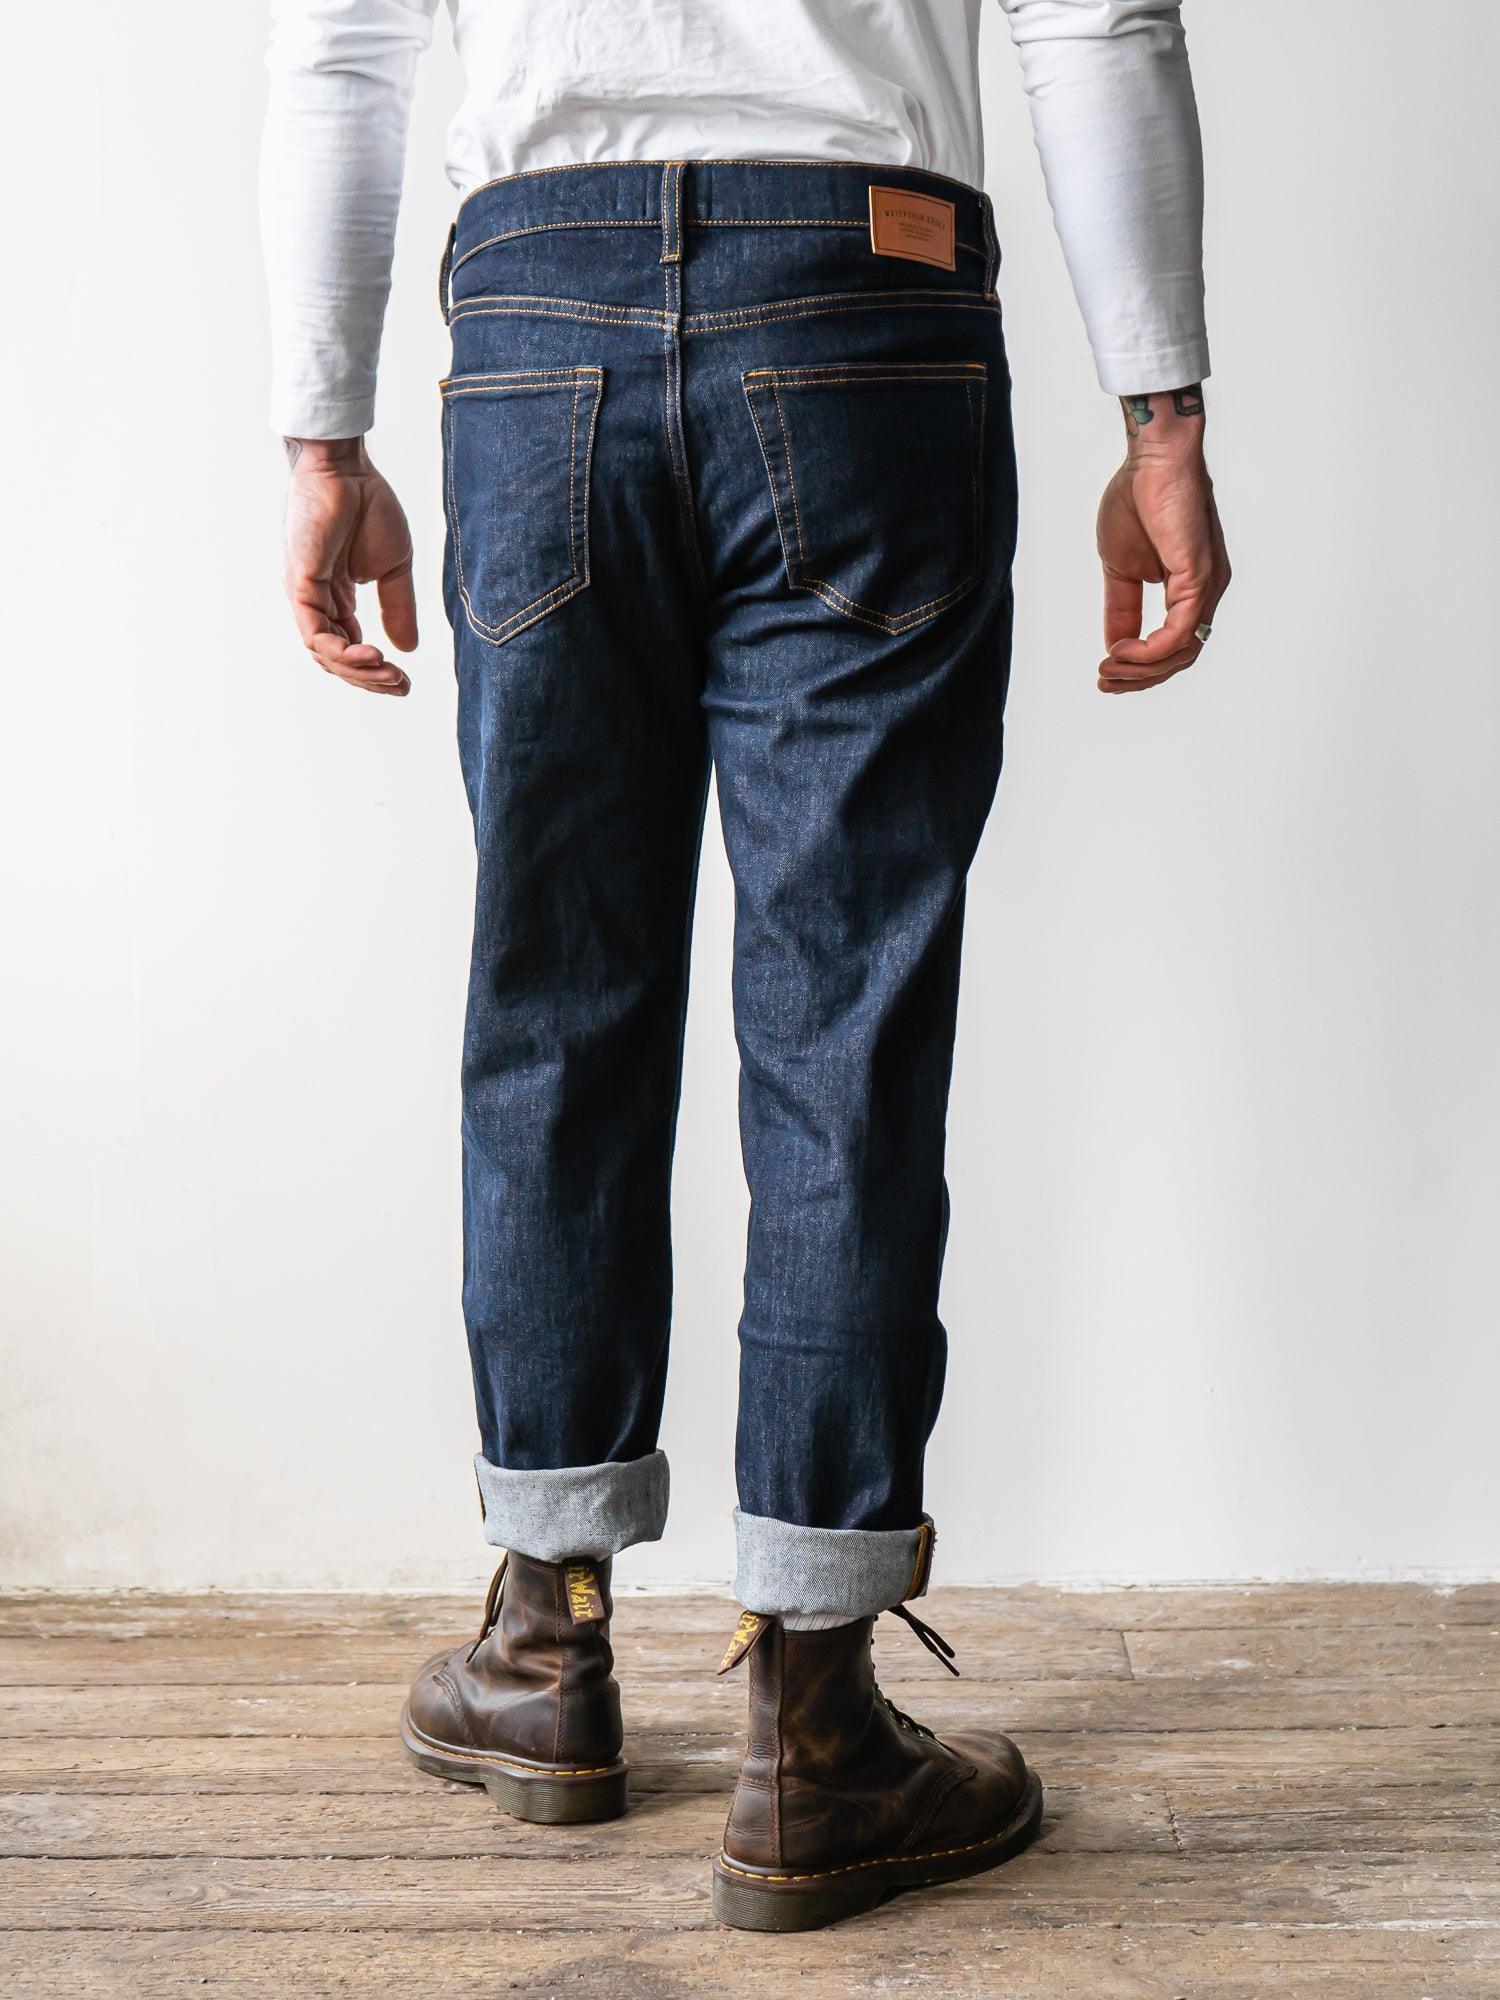 WS-1 Union Denim Jeans - Raw Indigo - Watershed Brand